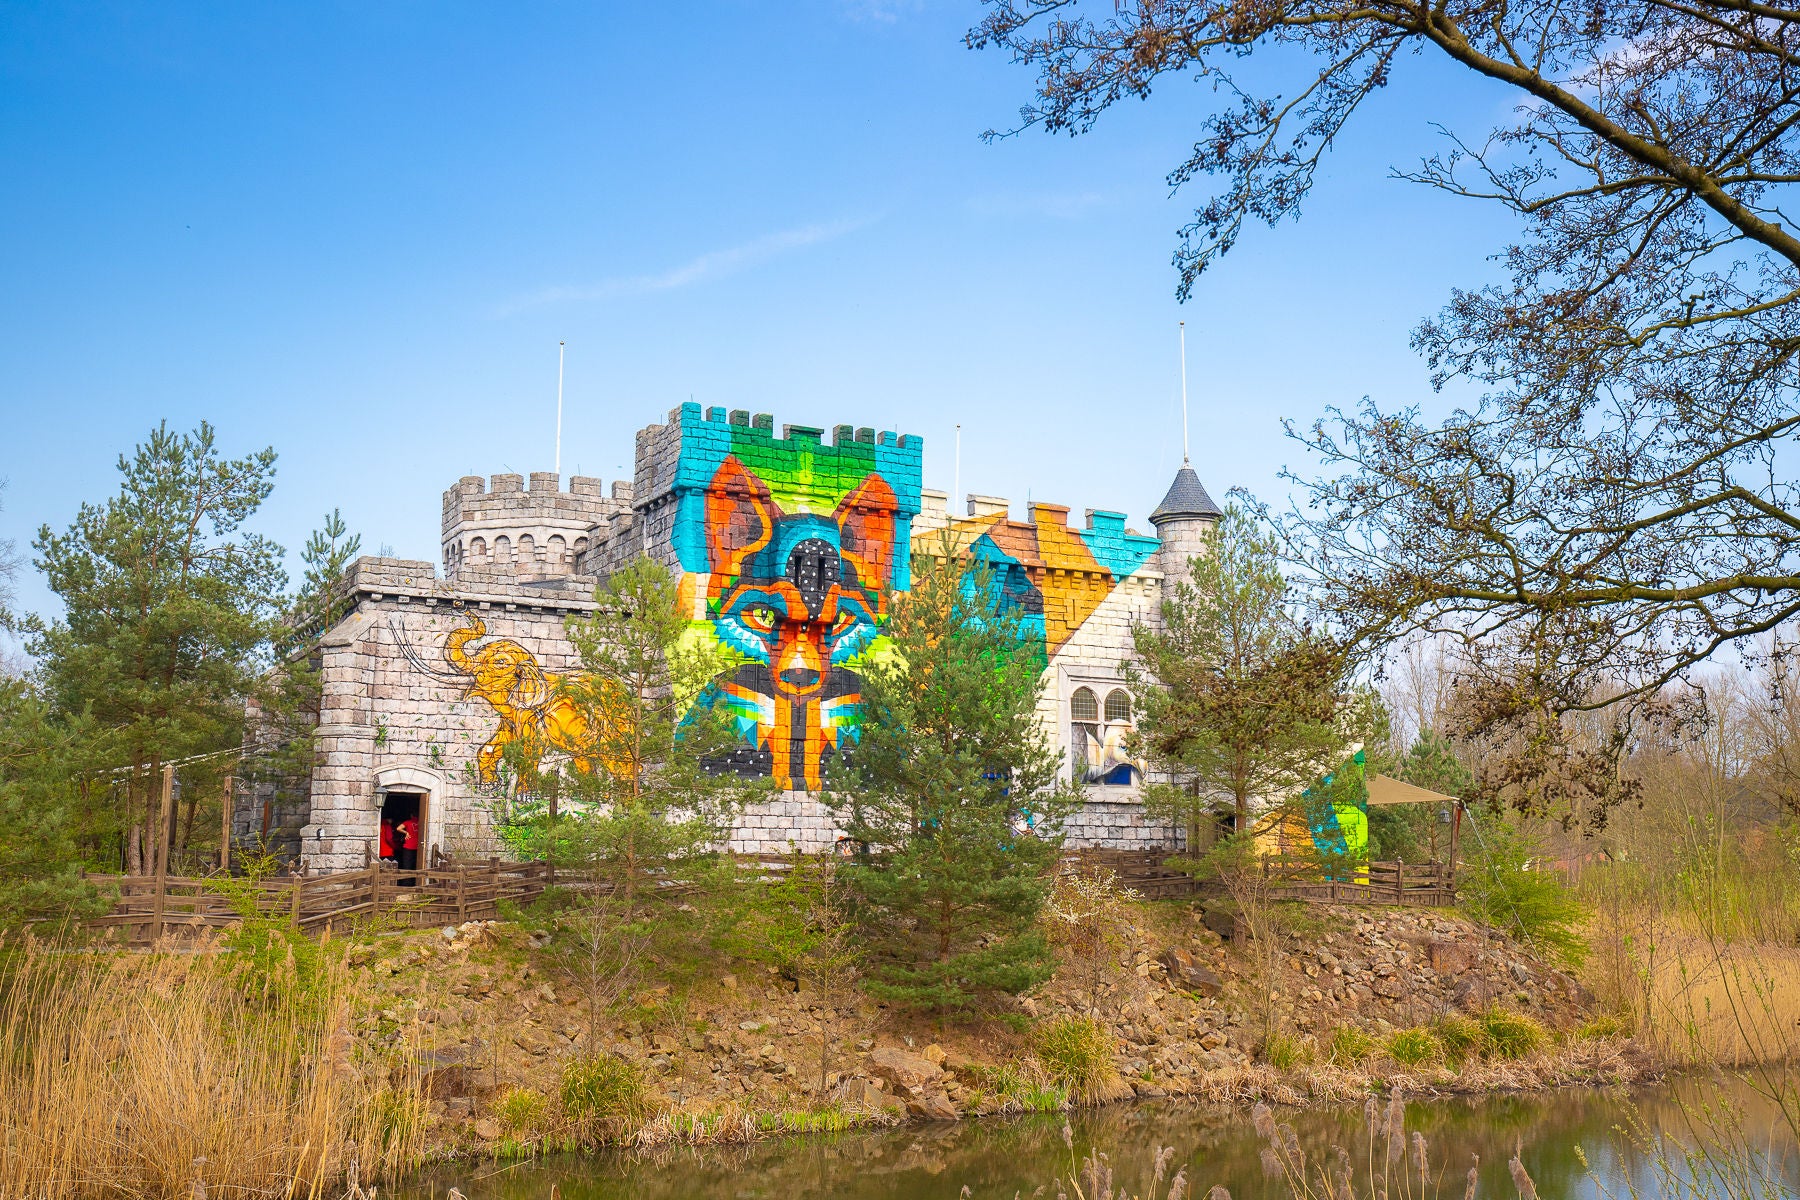 Merlins Schloss in Walibi Holland.